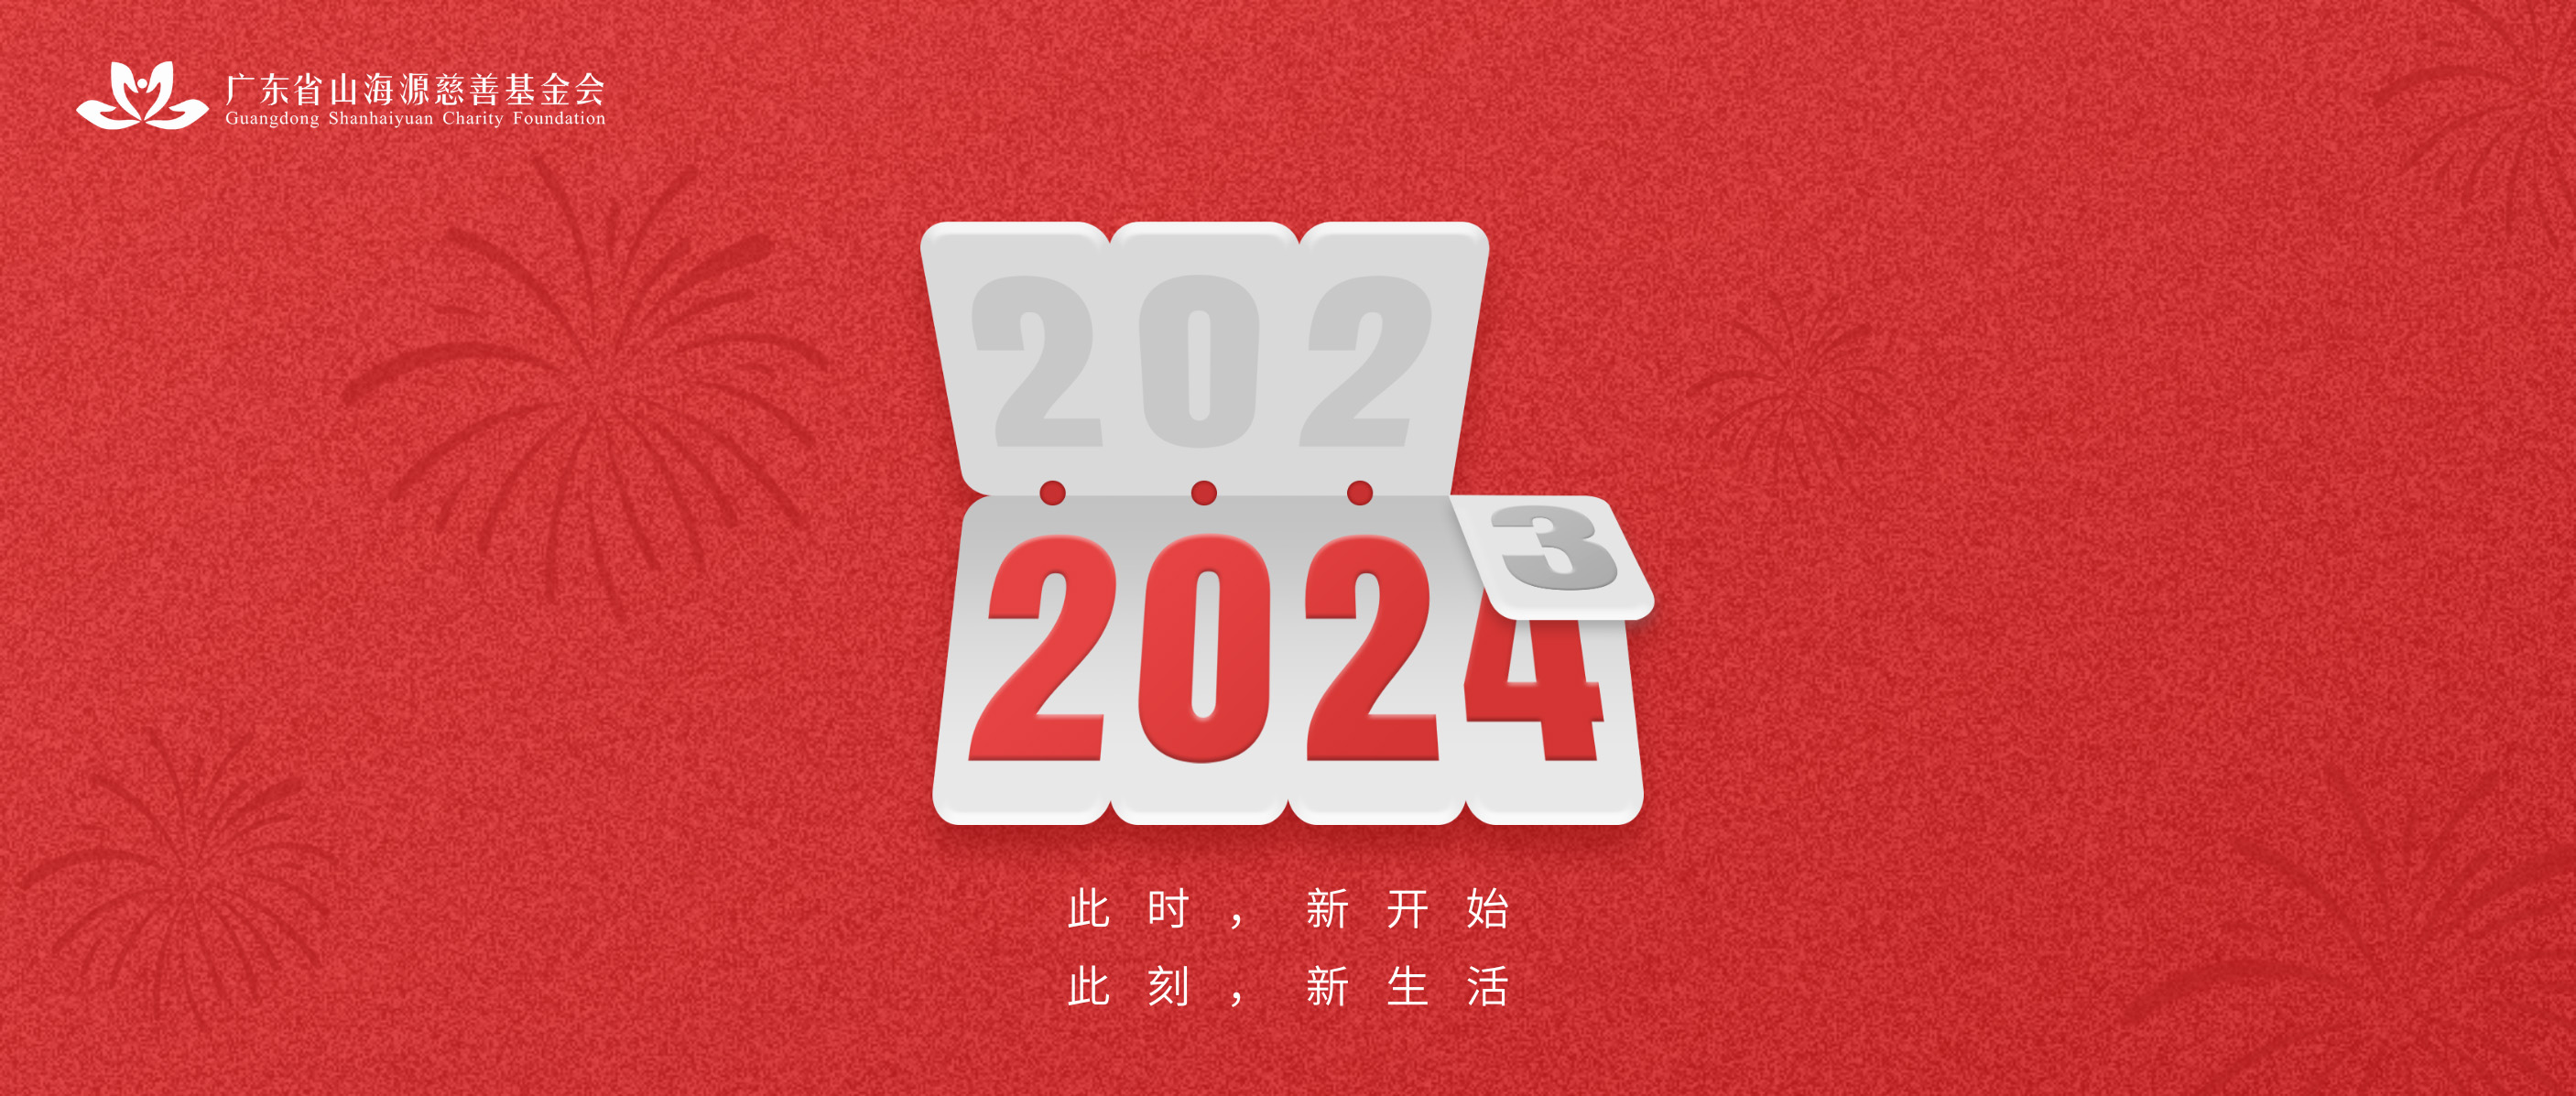 年终回眸 | 回首2023奋进路·扬帆2024新征程